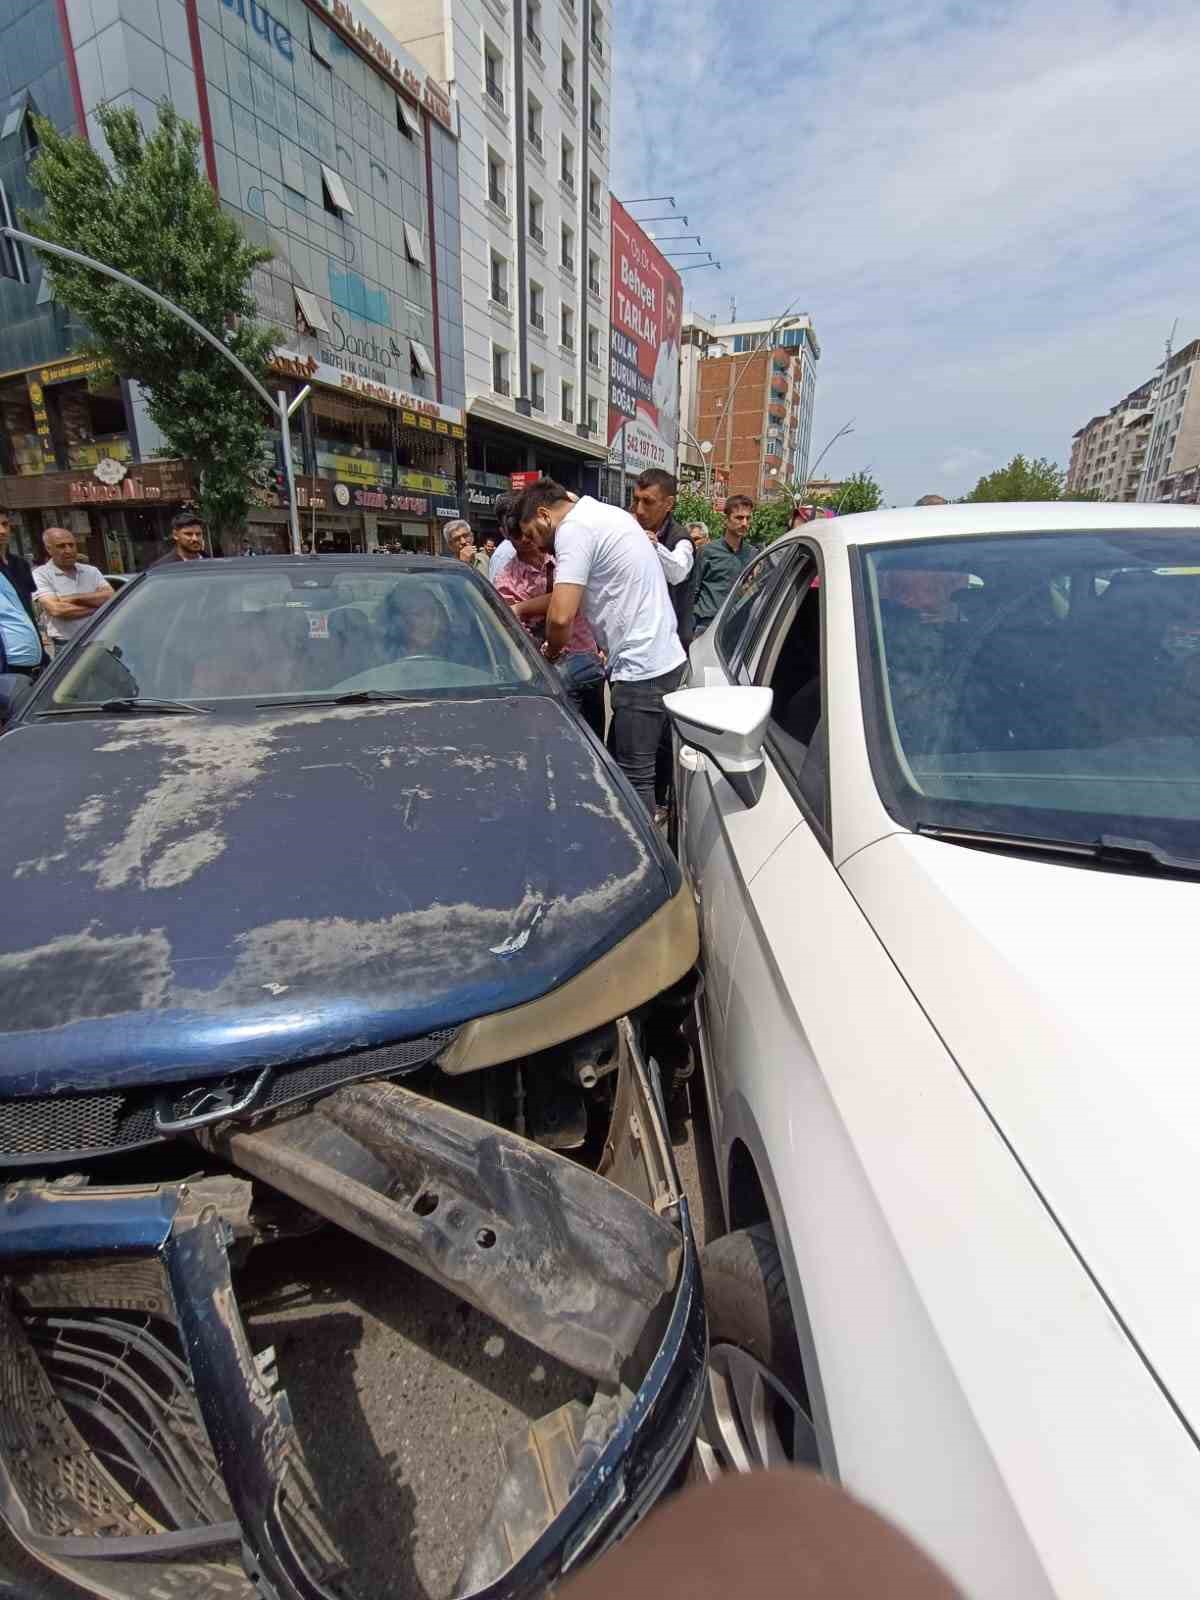 Kazaya karışan kadın çevredekilere hakaret edip ’trafik dersi’ verdi
